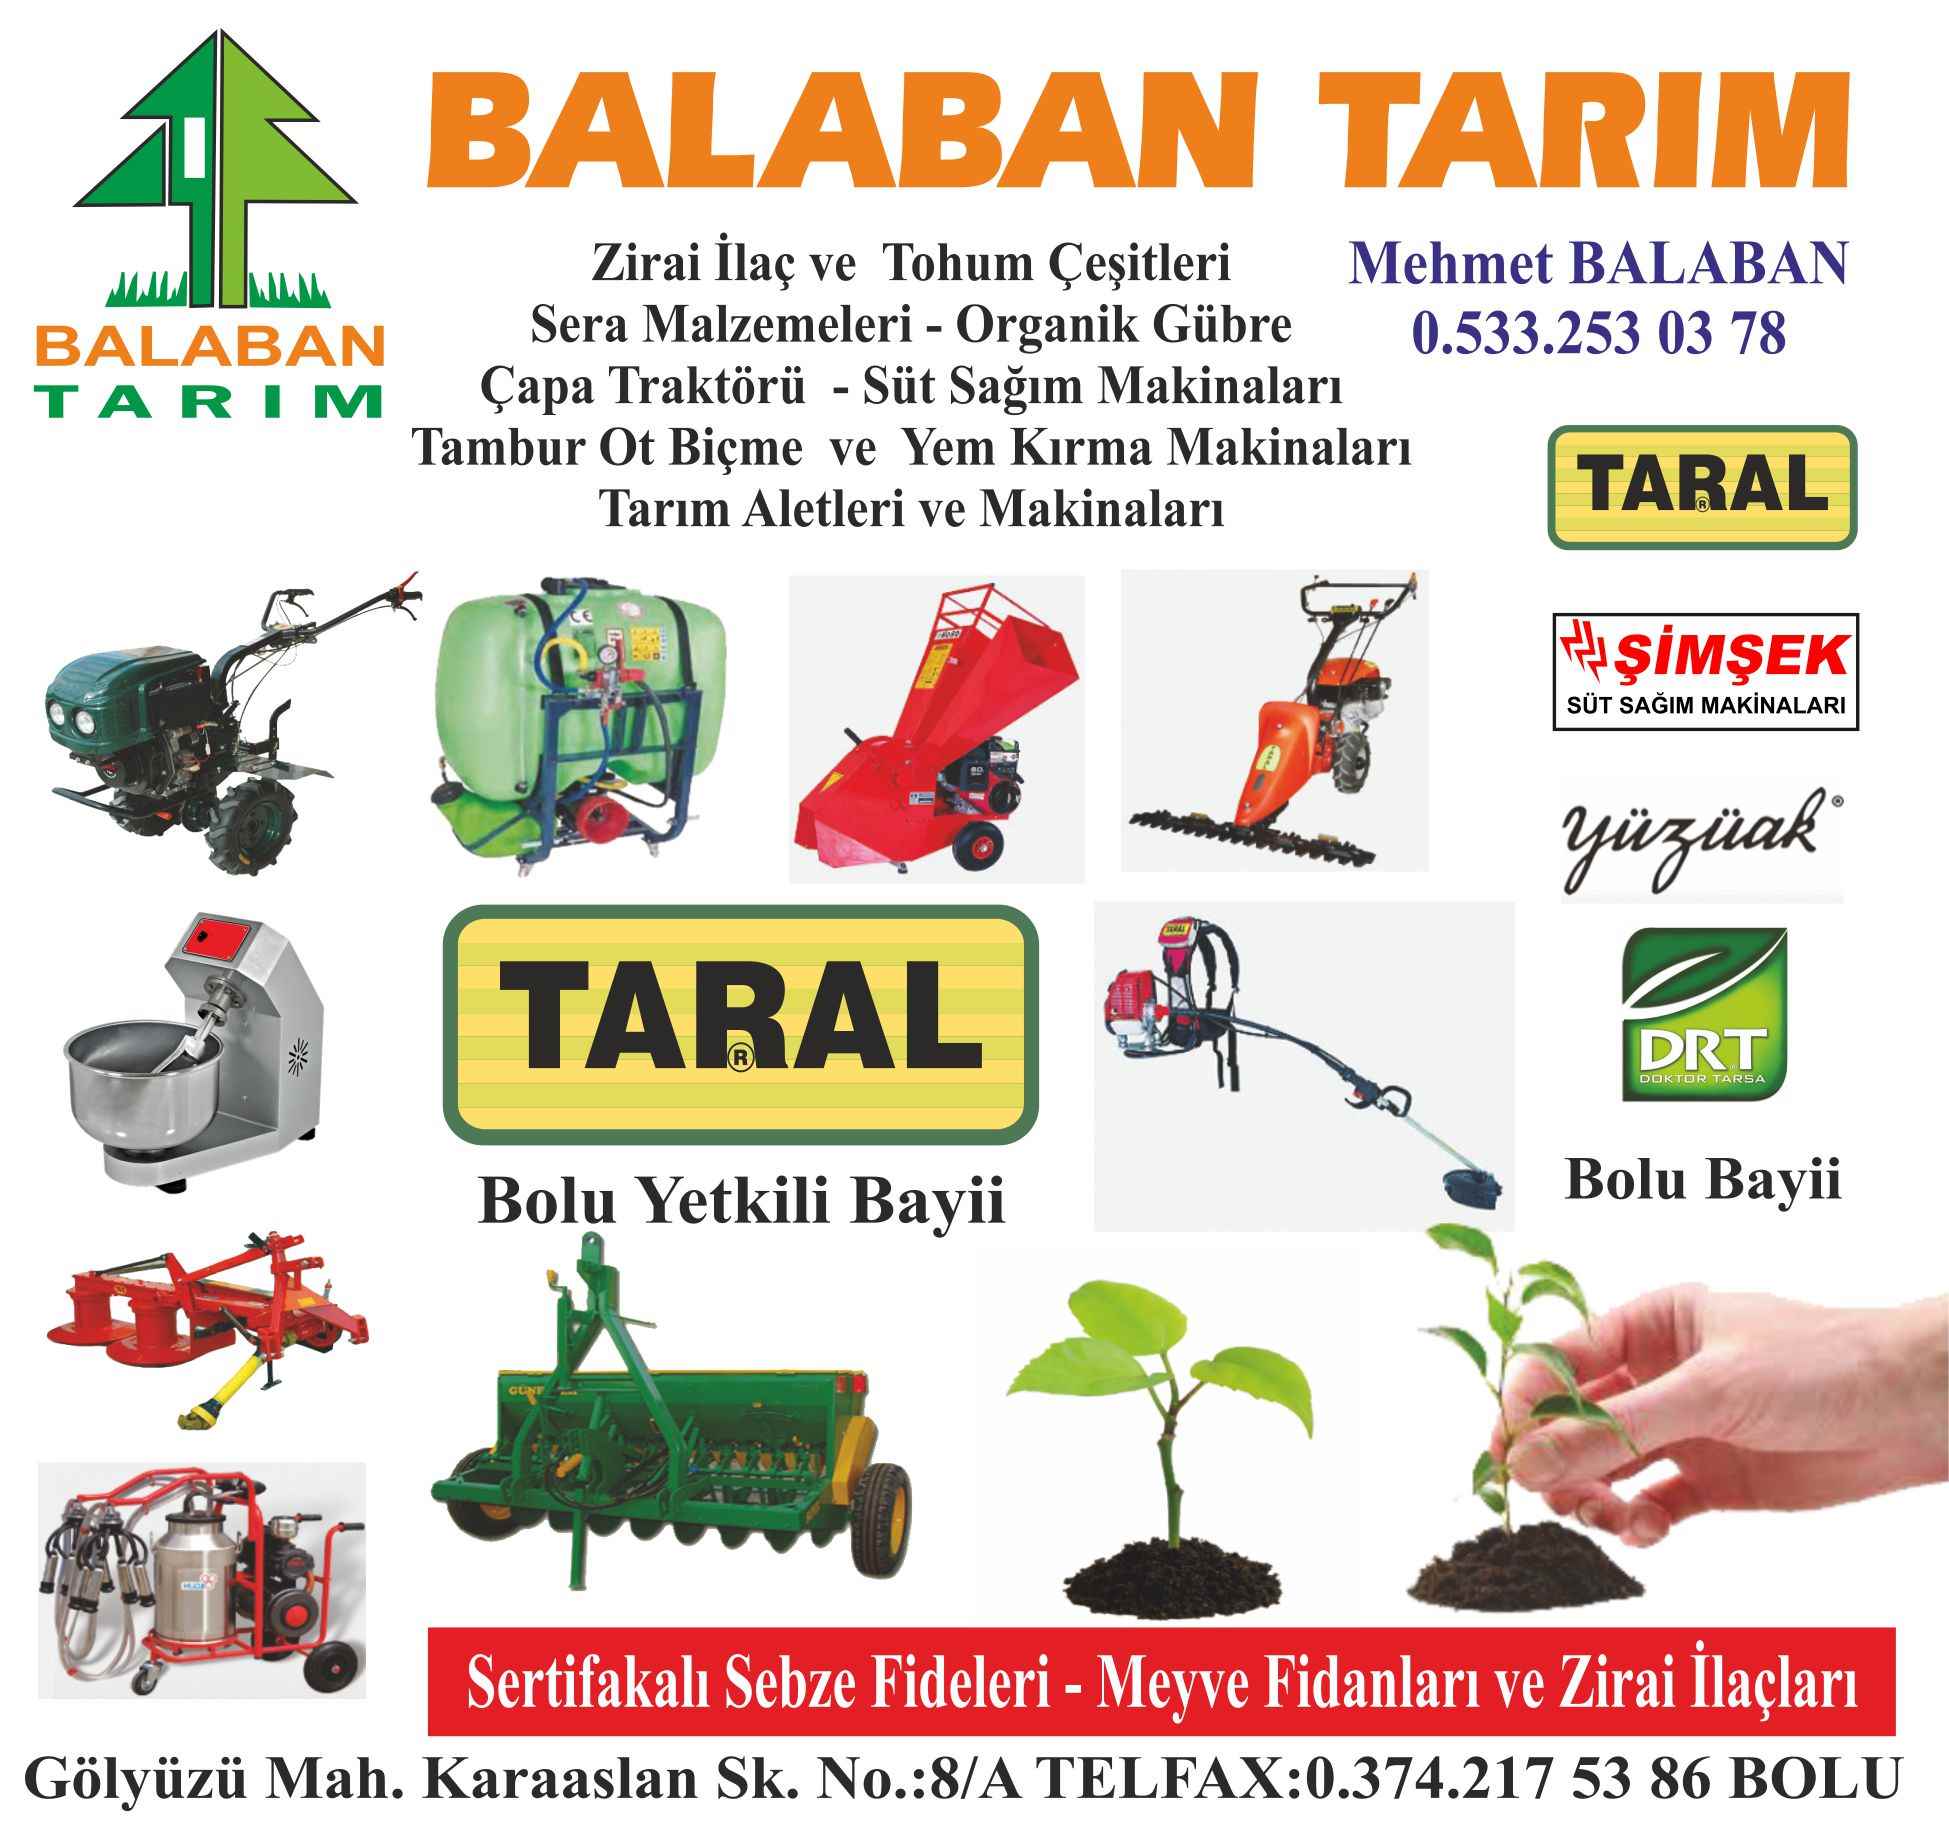 Balaban Tarim Bolu